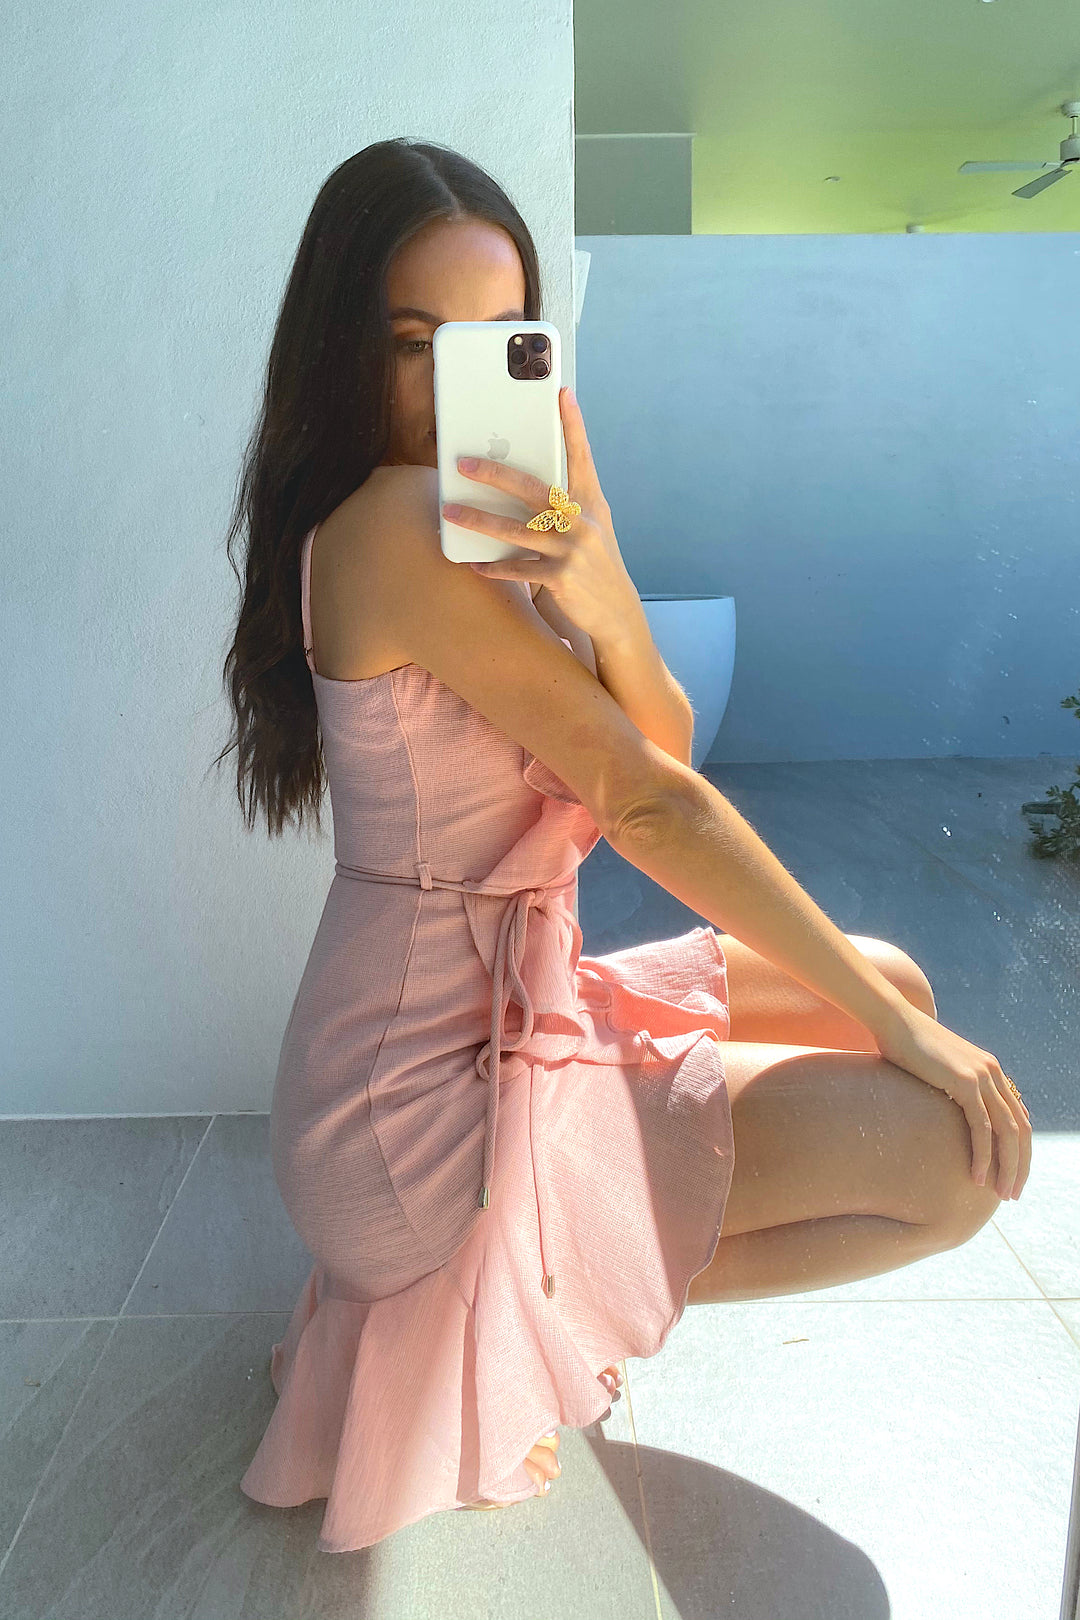 Annie Dress in Pink